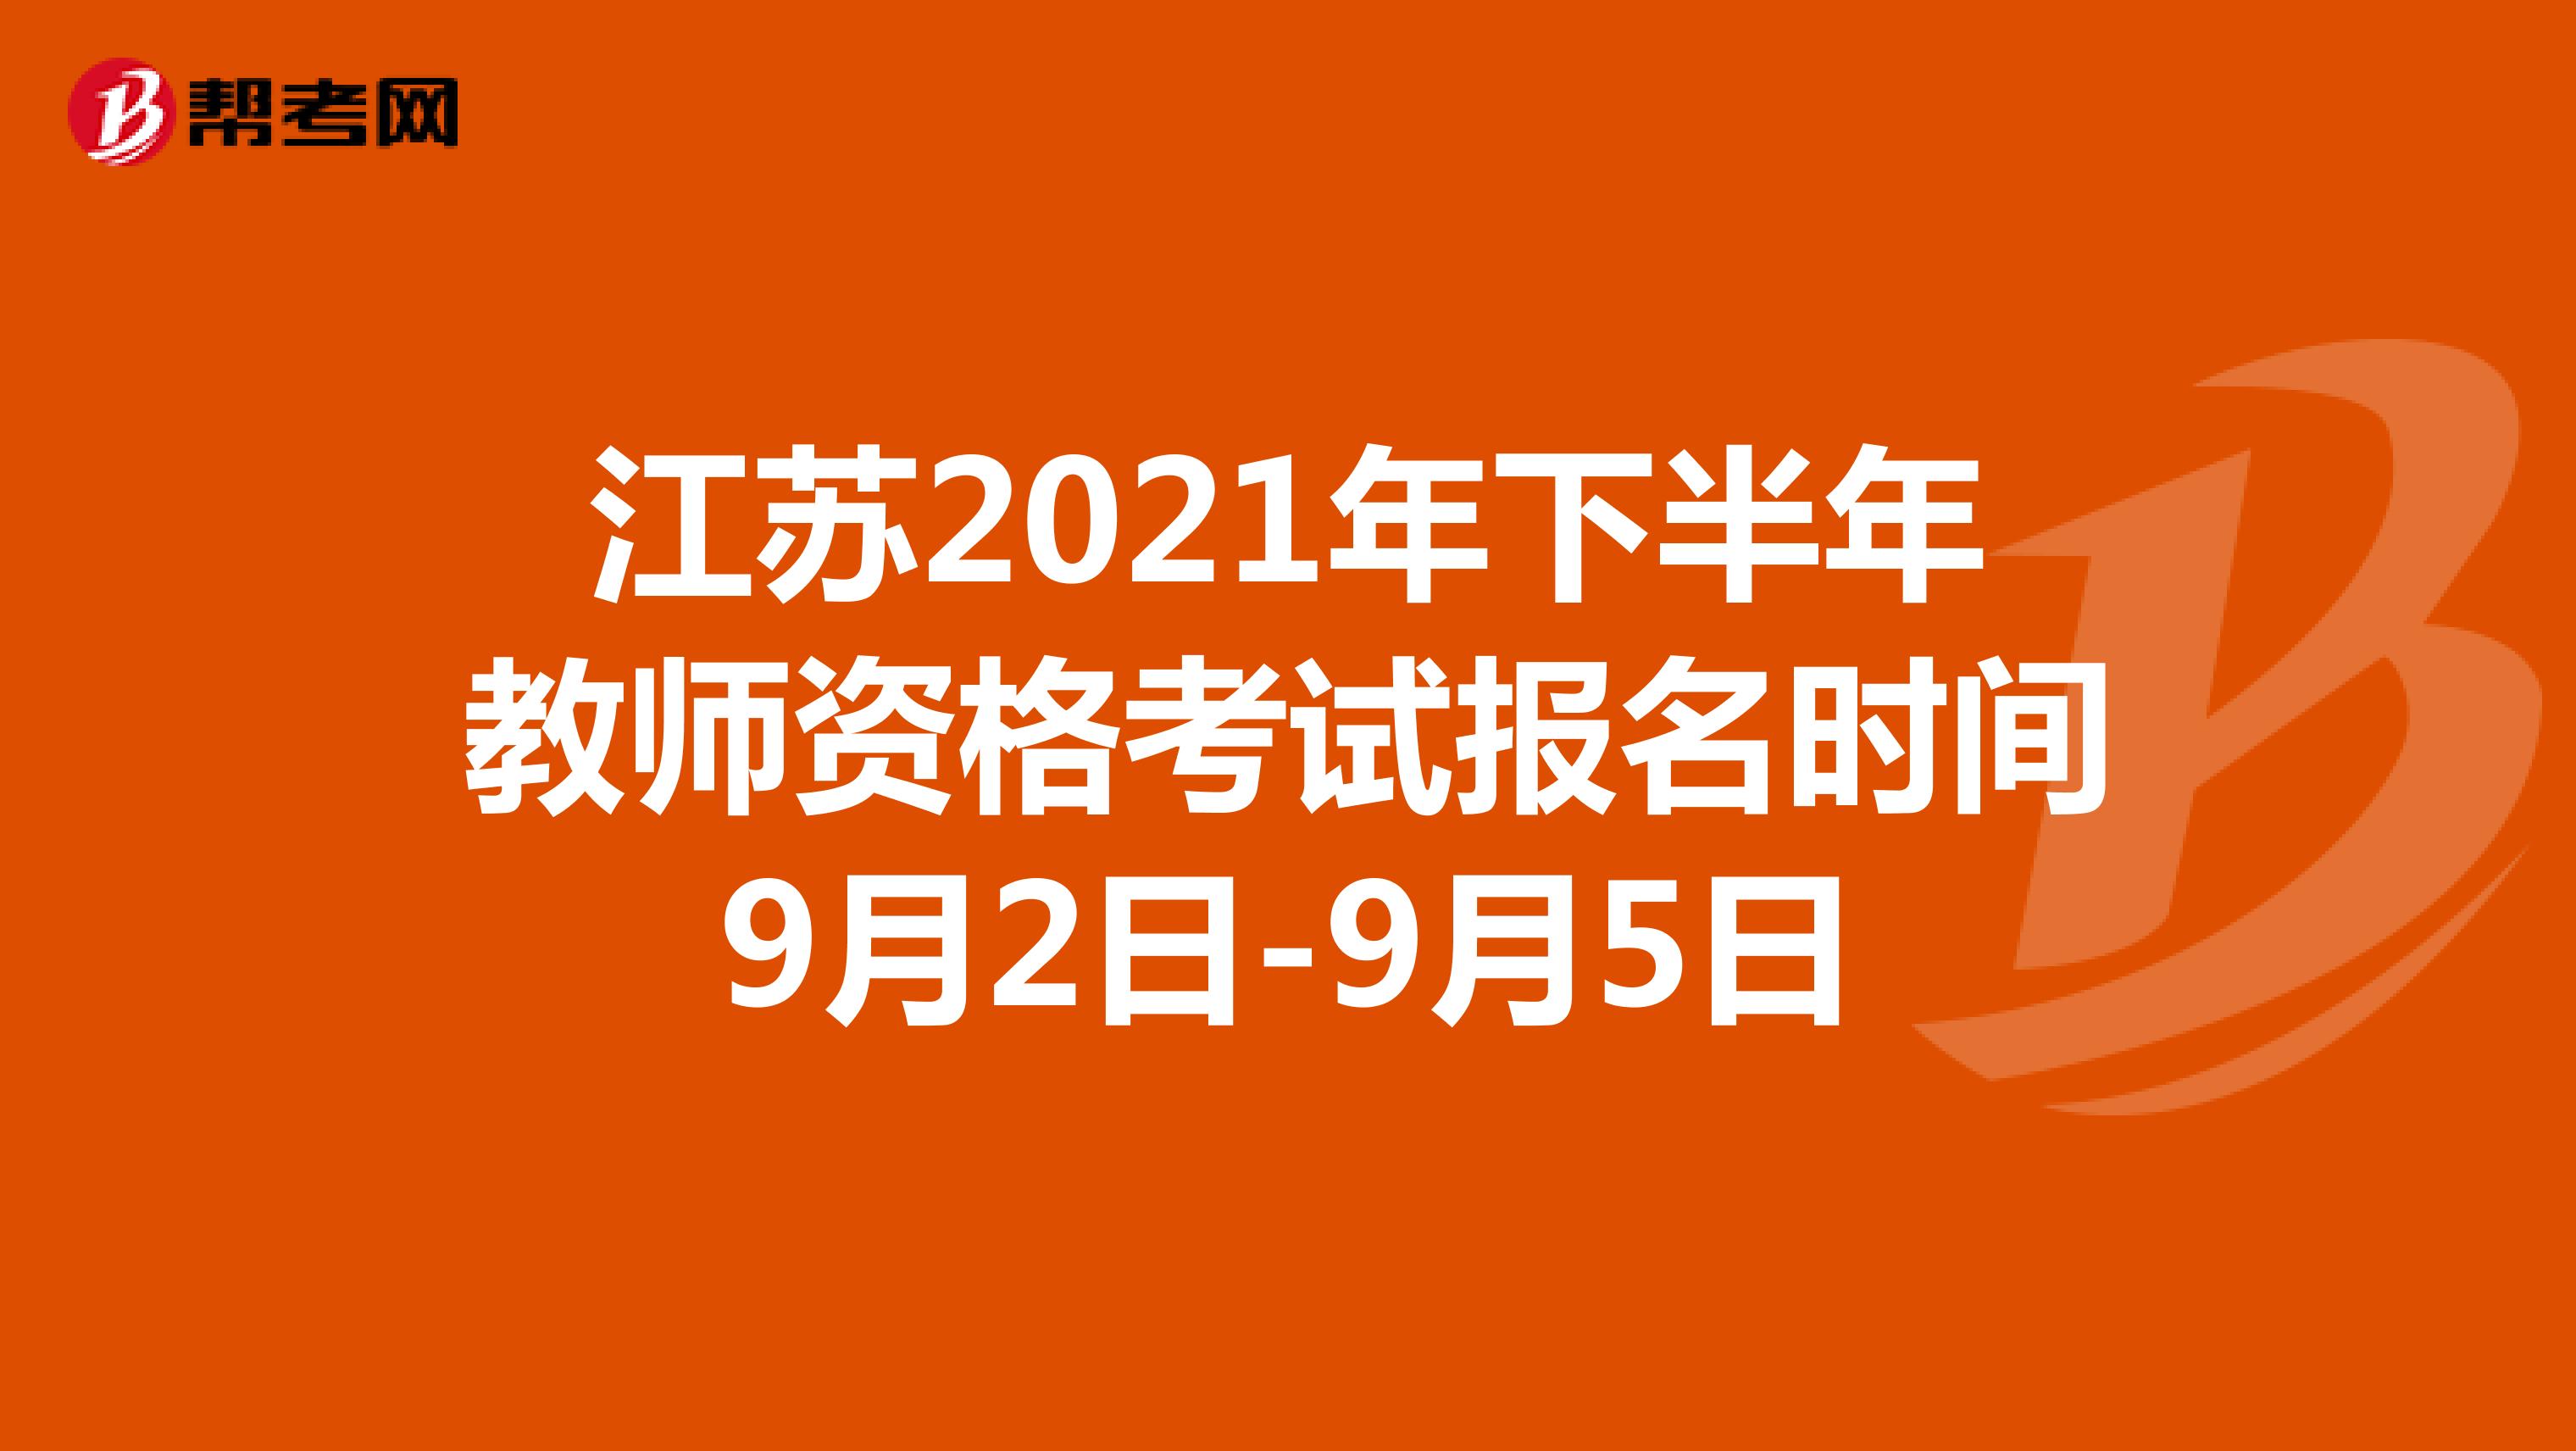 江苏2021年下半年教师资格考试报名时间9月2日-9月5日